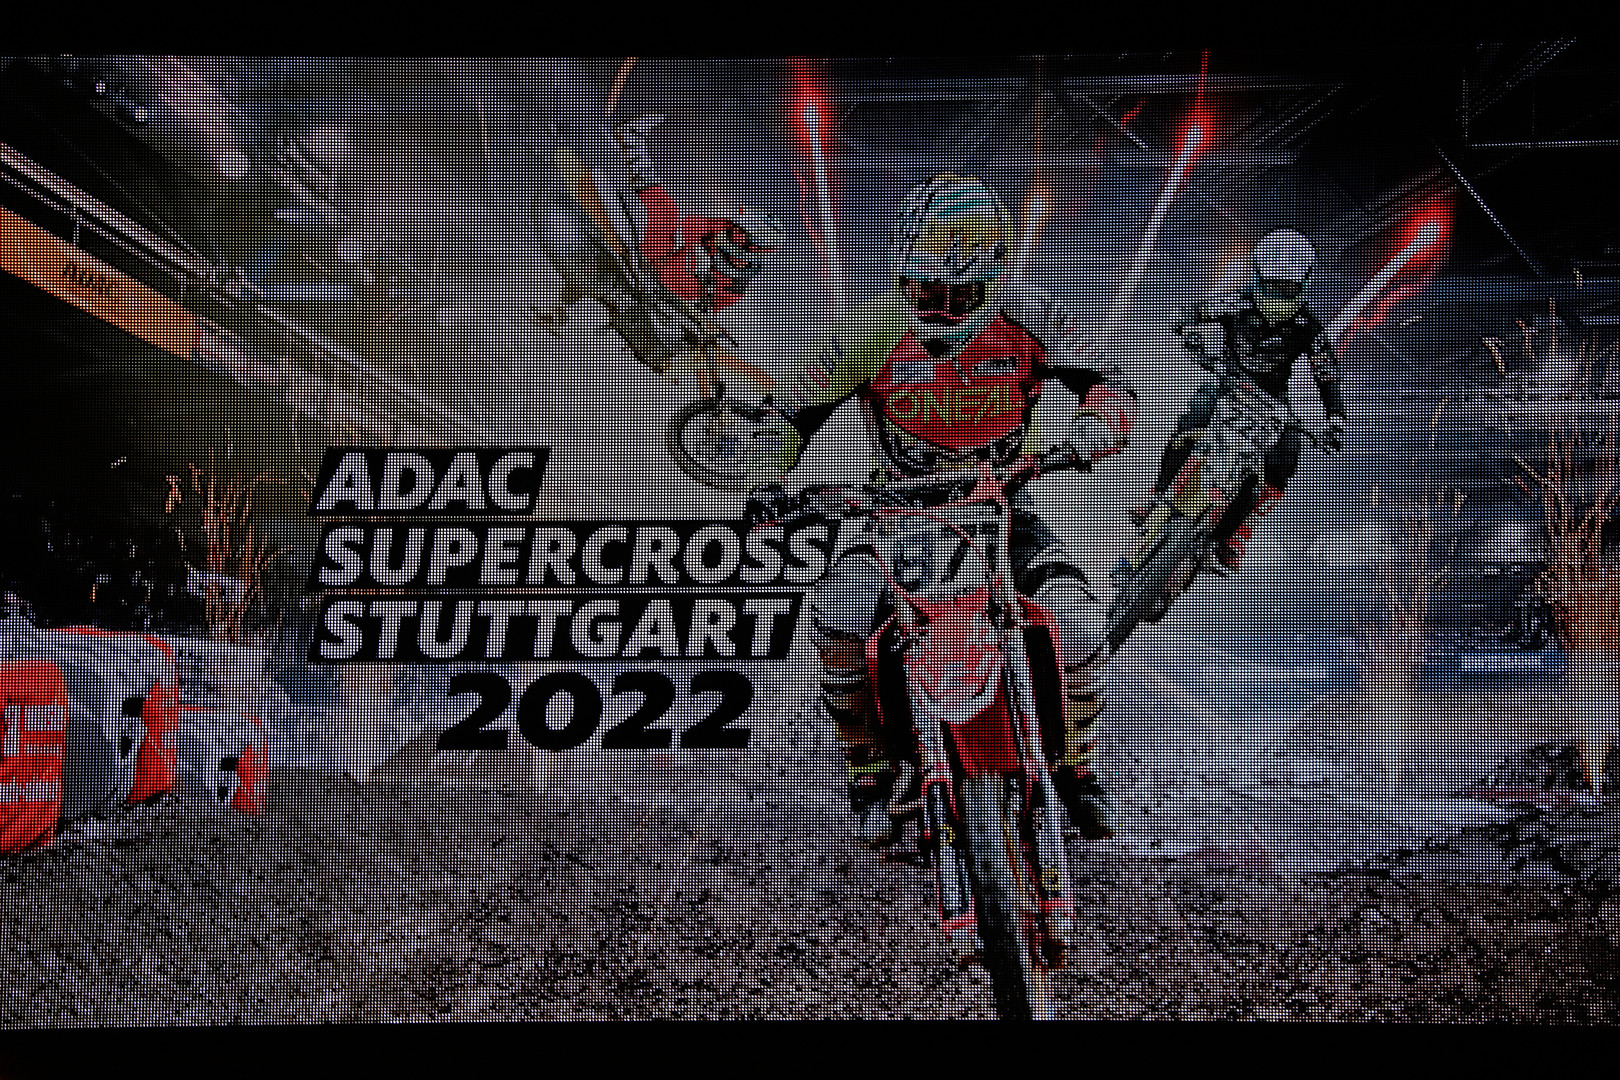 ADAC Supercross Stuttgart 2022